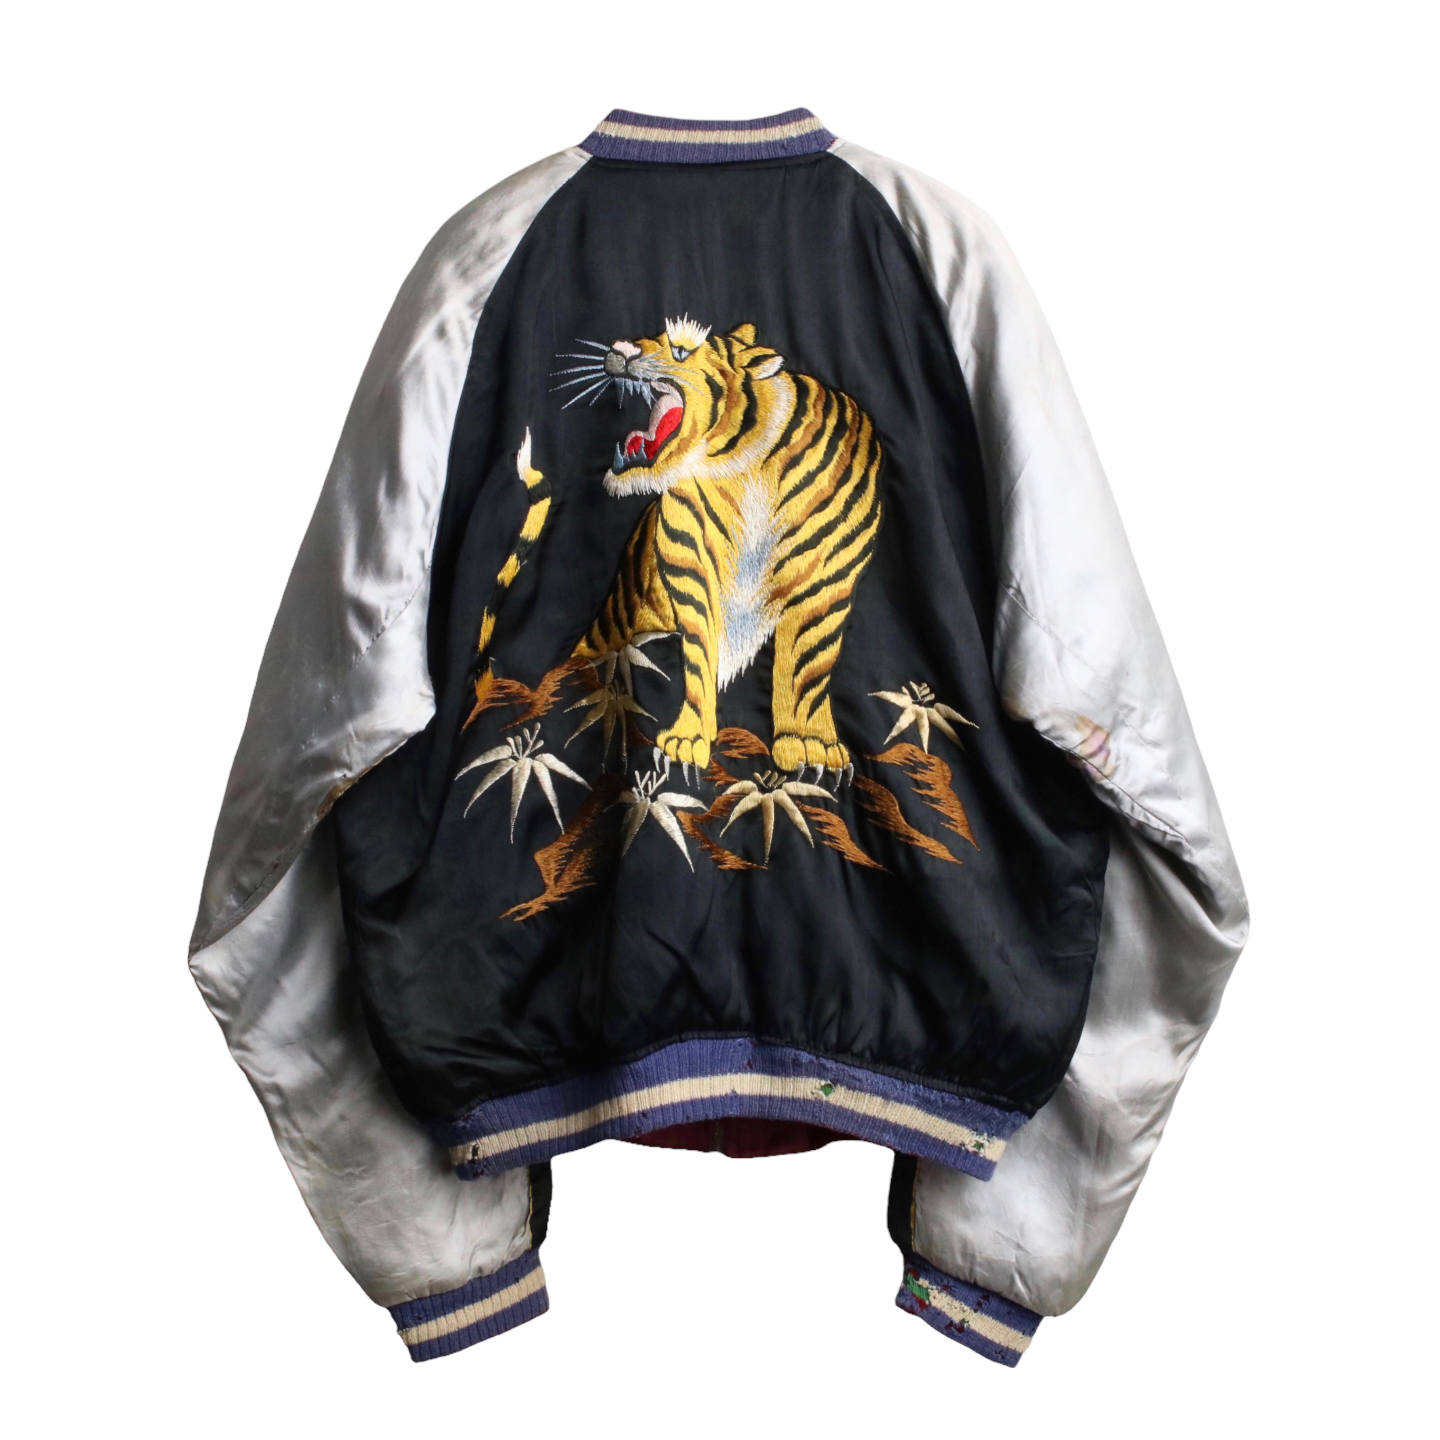 スーベニアジャケット ミリタリー 刺繍 スカジャン タイガー 虎-